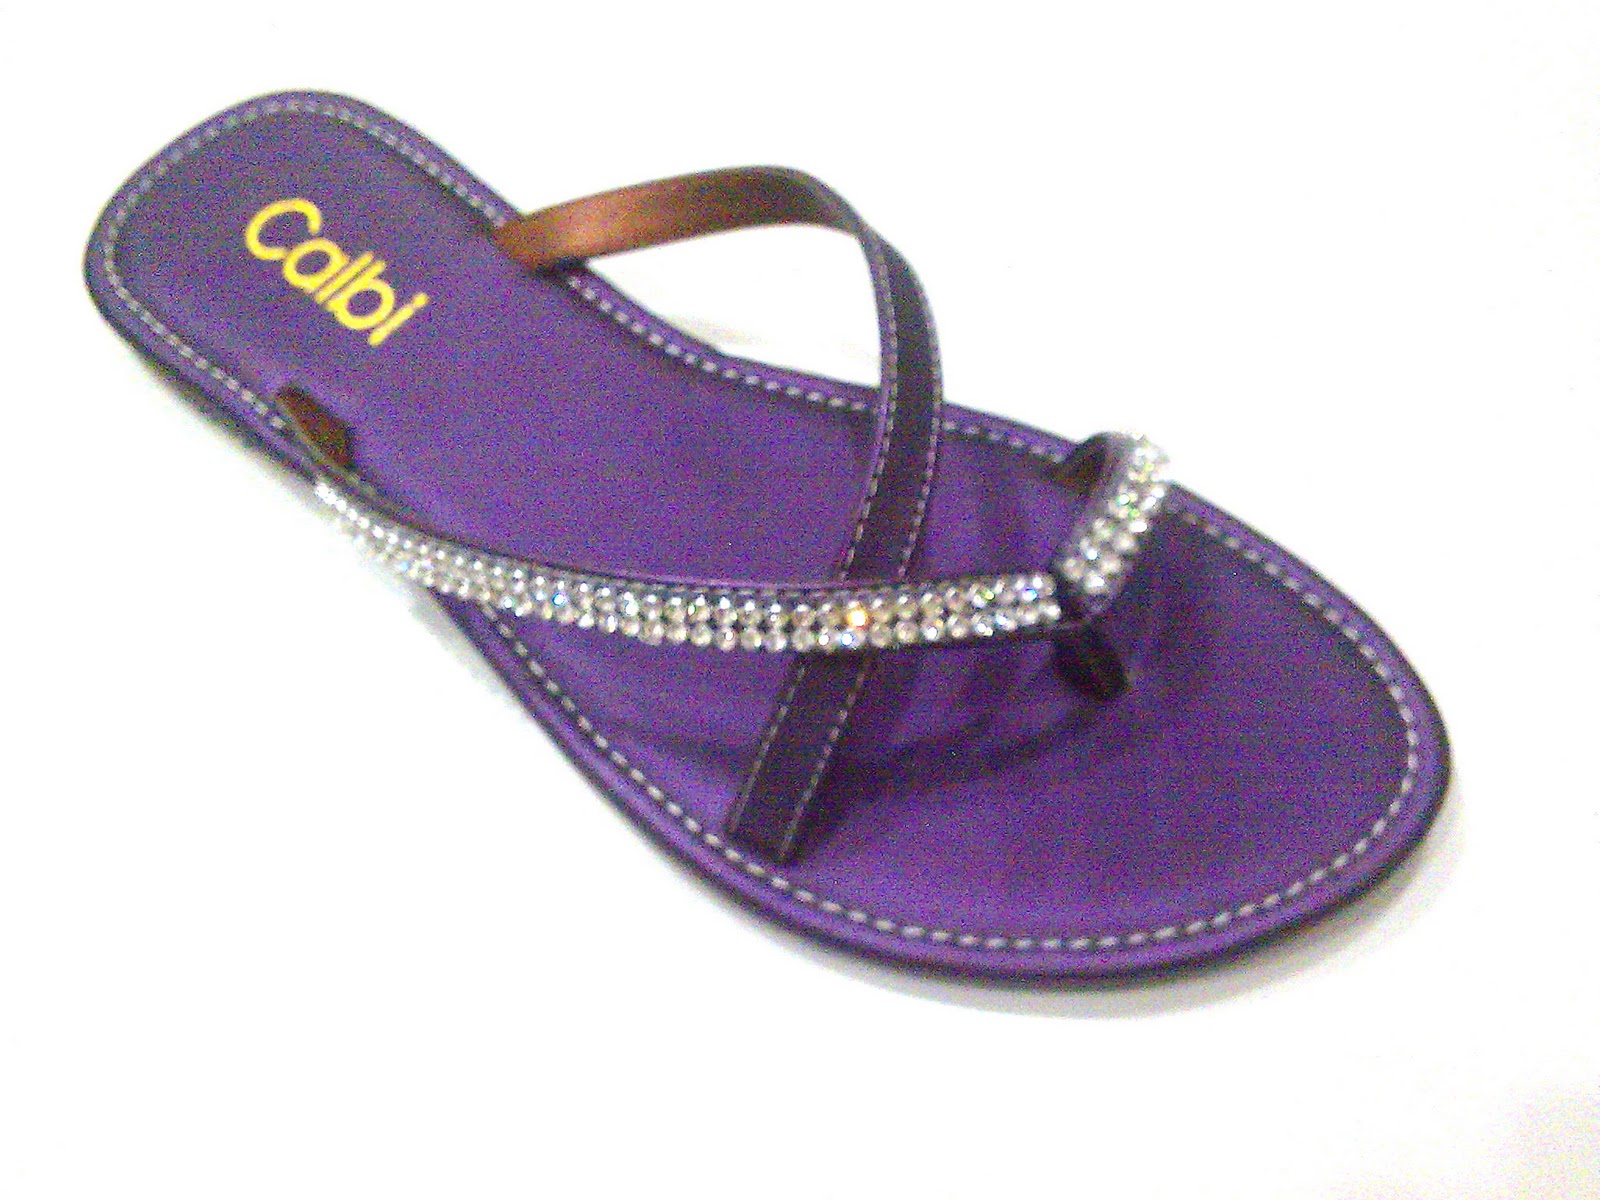  Sandal  Wanita Calbi  COX 05 36 40 Gallery Sepatu